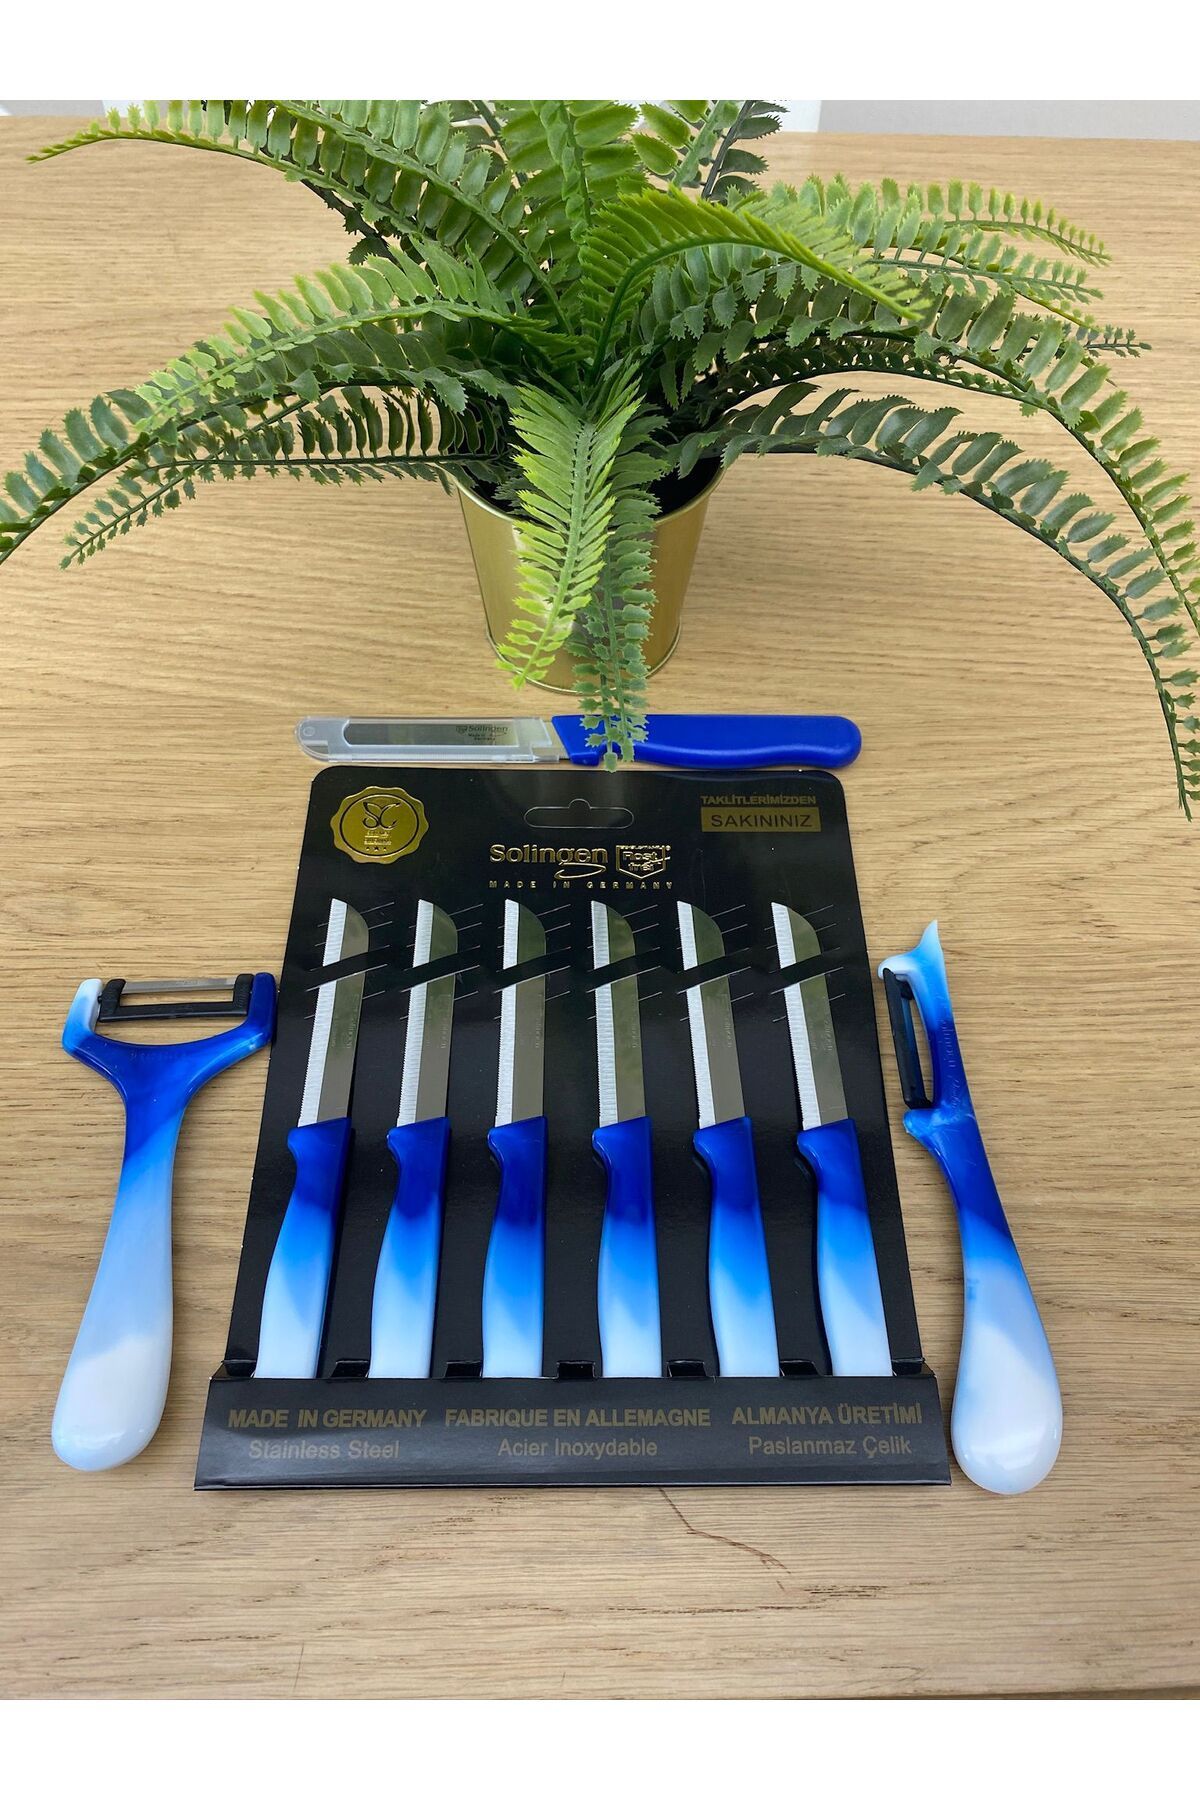 Solingen micro tırtıklı genel kullanım bıçağı 6lı meyve bıçağı yan ve düz soyacak turkuaz reng